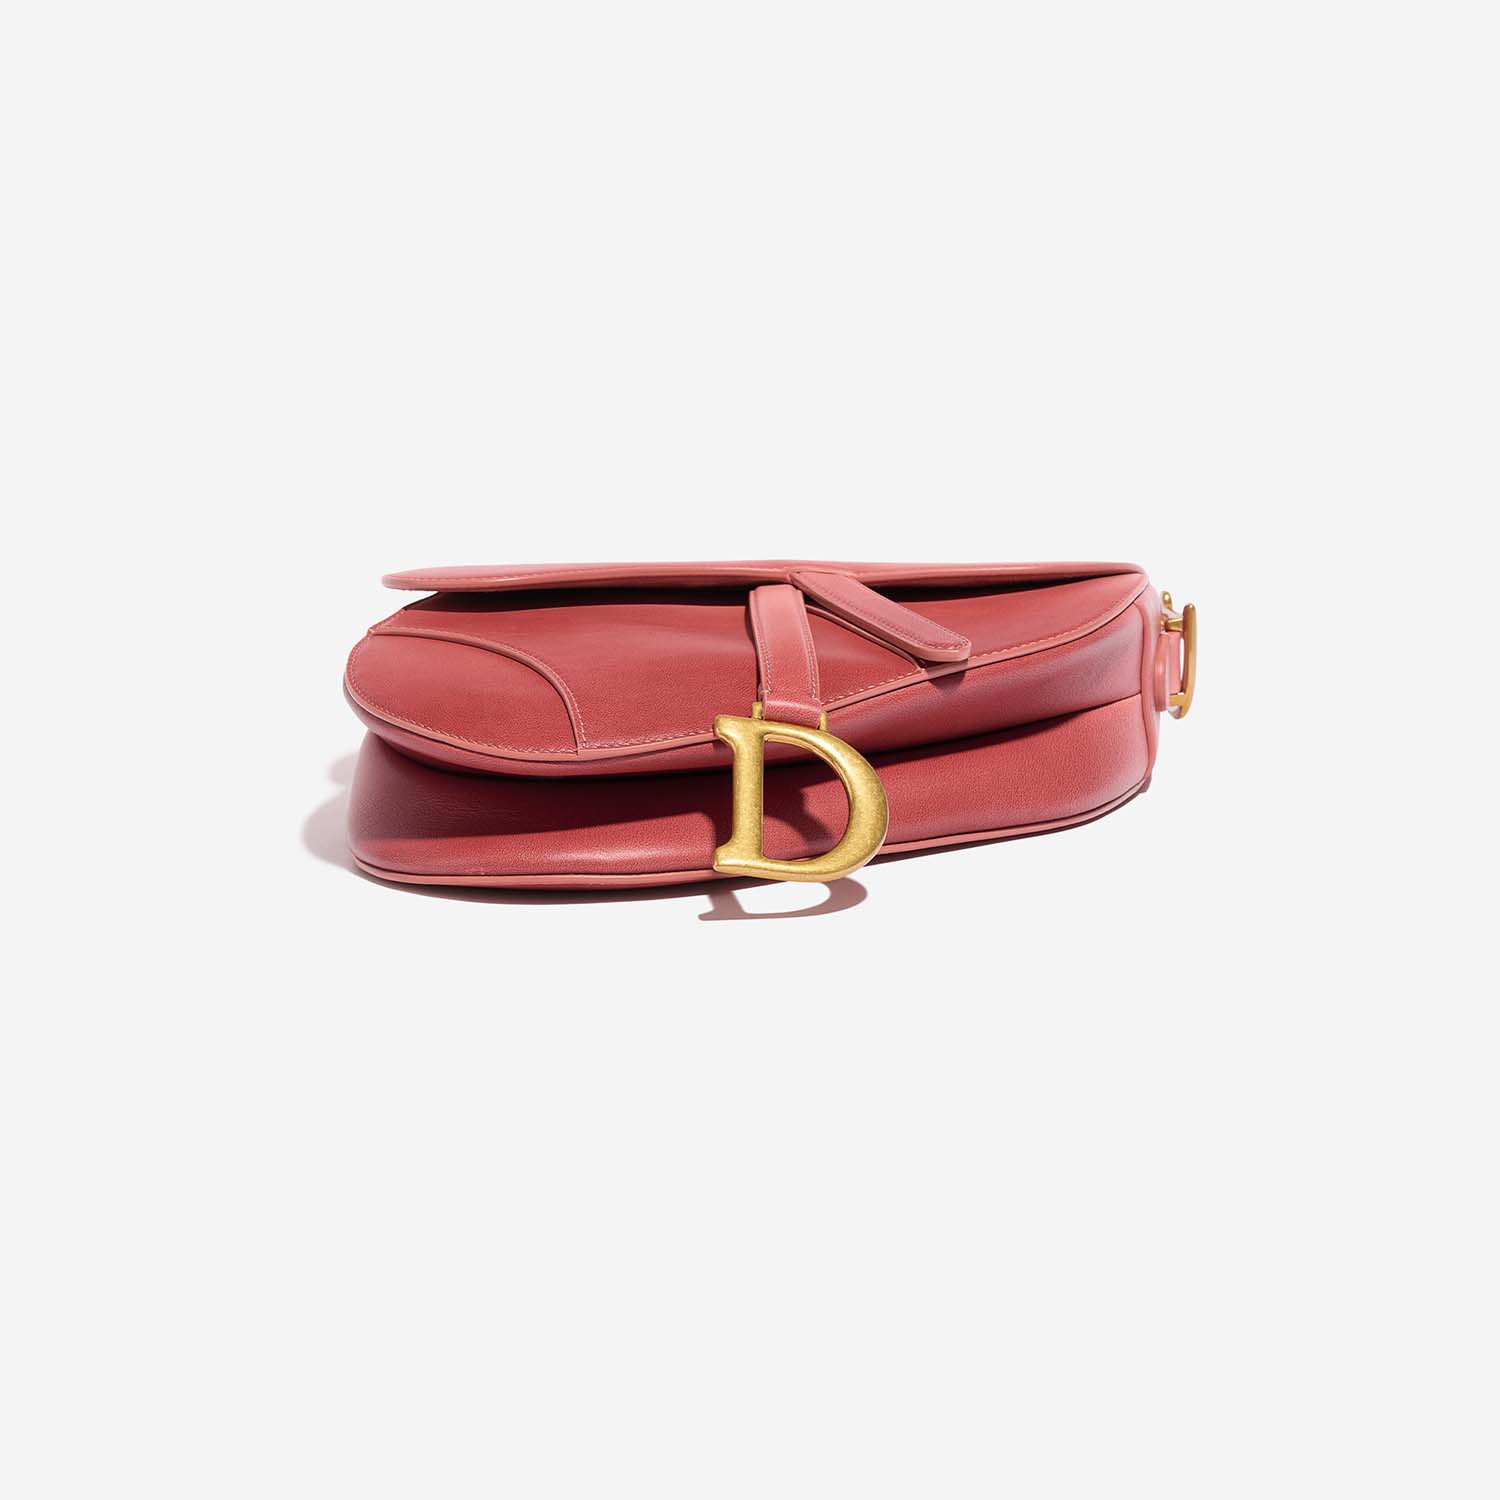 Dior Saddle Medium Pink Bottom | Verkaufen Sie Ihre Designer-Tasche auf Saclab.com